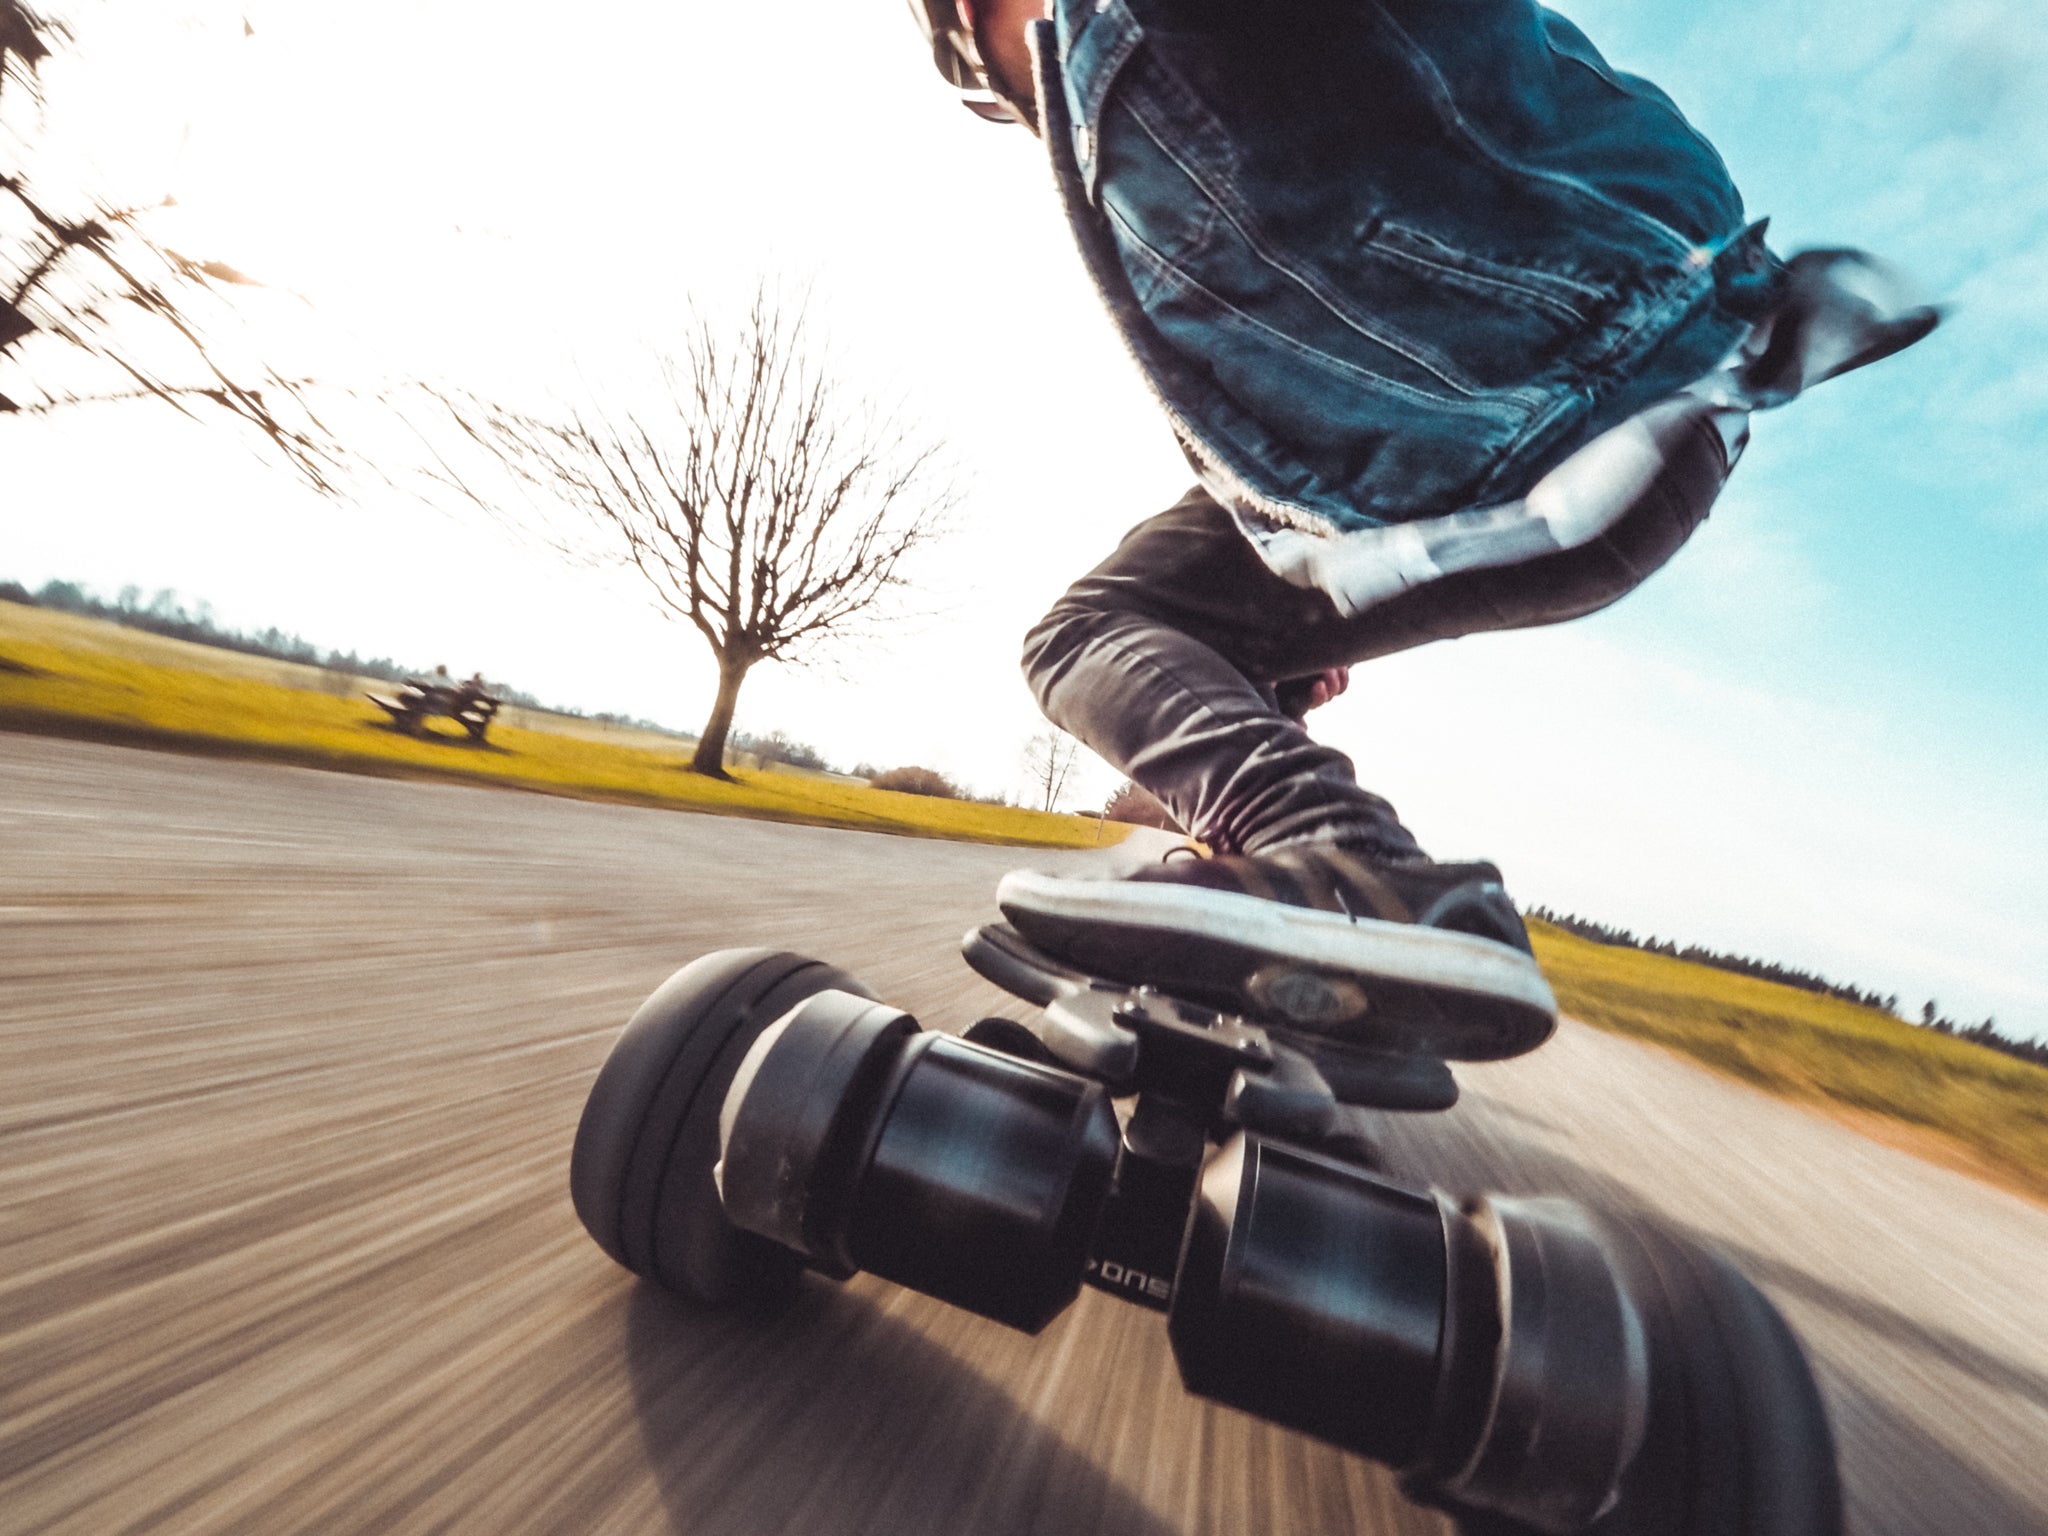 Le meilleur skateboard électrique 2 en 1. Entraînement par courroie ONSRA Black Carve 2 avec roues en caoutchouc de 115 mm ou roues AT de 150 mm. Longboard électrique avec double kingpin et entraînement par courroie.